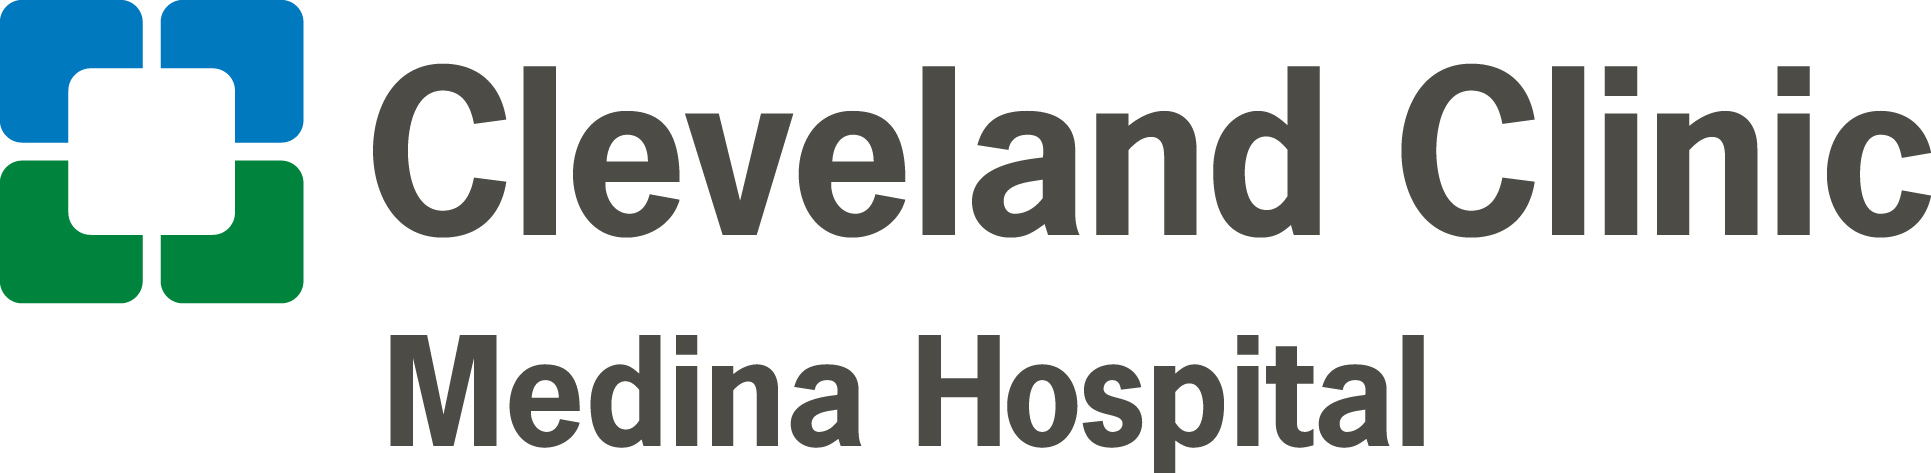 4. Cleveland Clinic Medina Hospital (Tier 4)